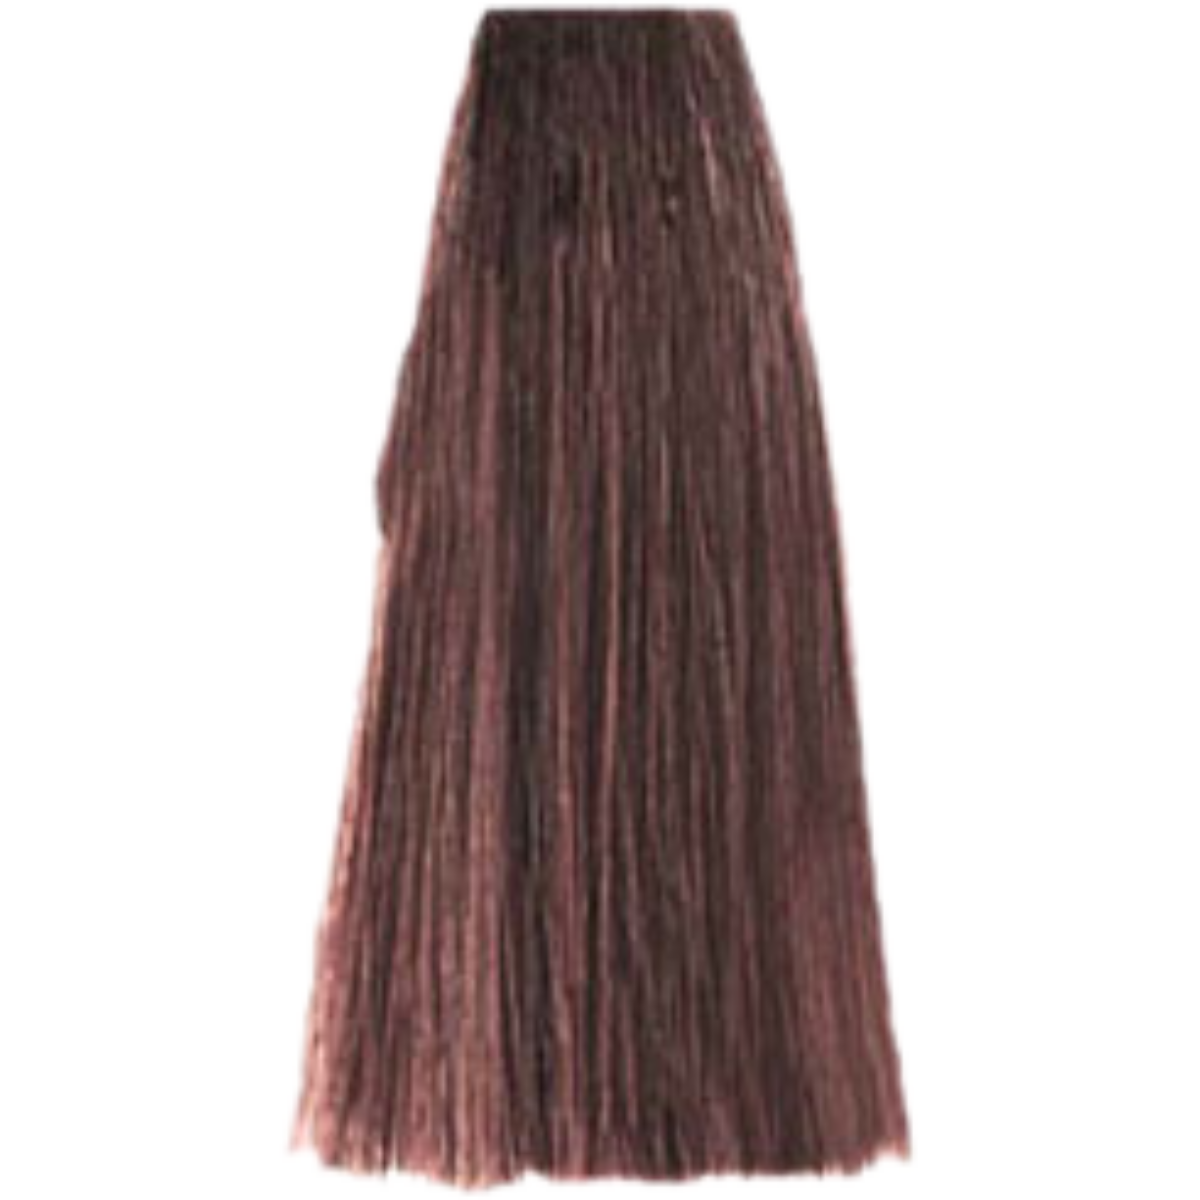 צבע שיער 6.77 DARK BLONDE BROWN INTENSE פארמויטה FarmaVita צבע לשיער 100 גרם